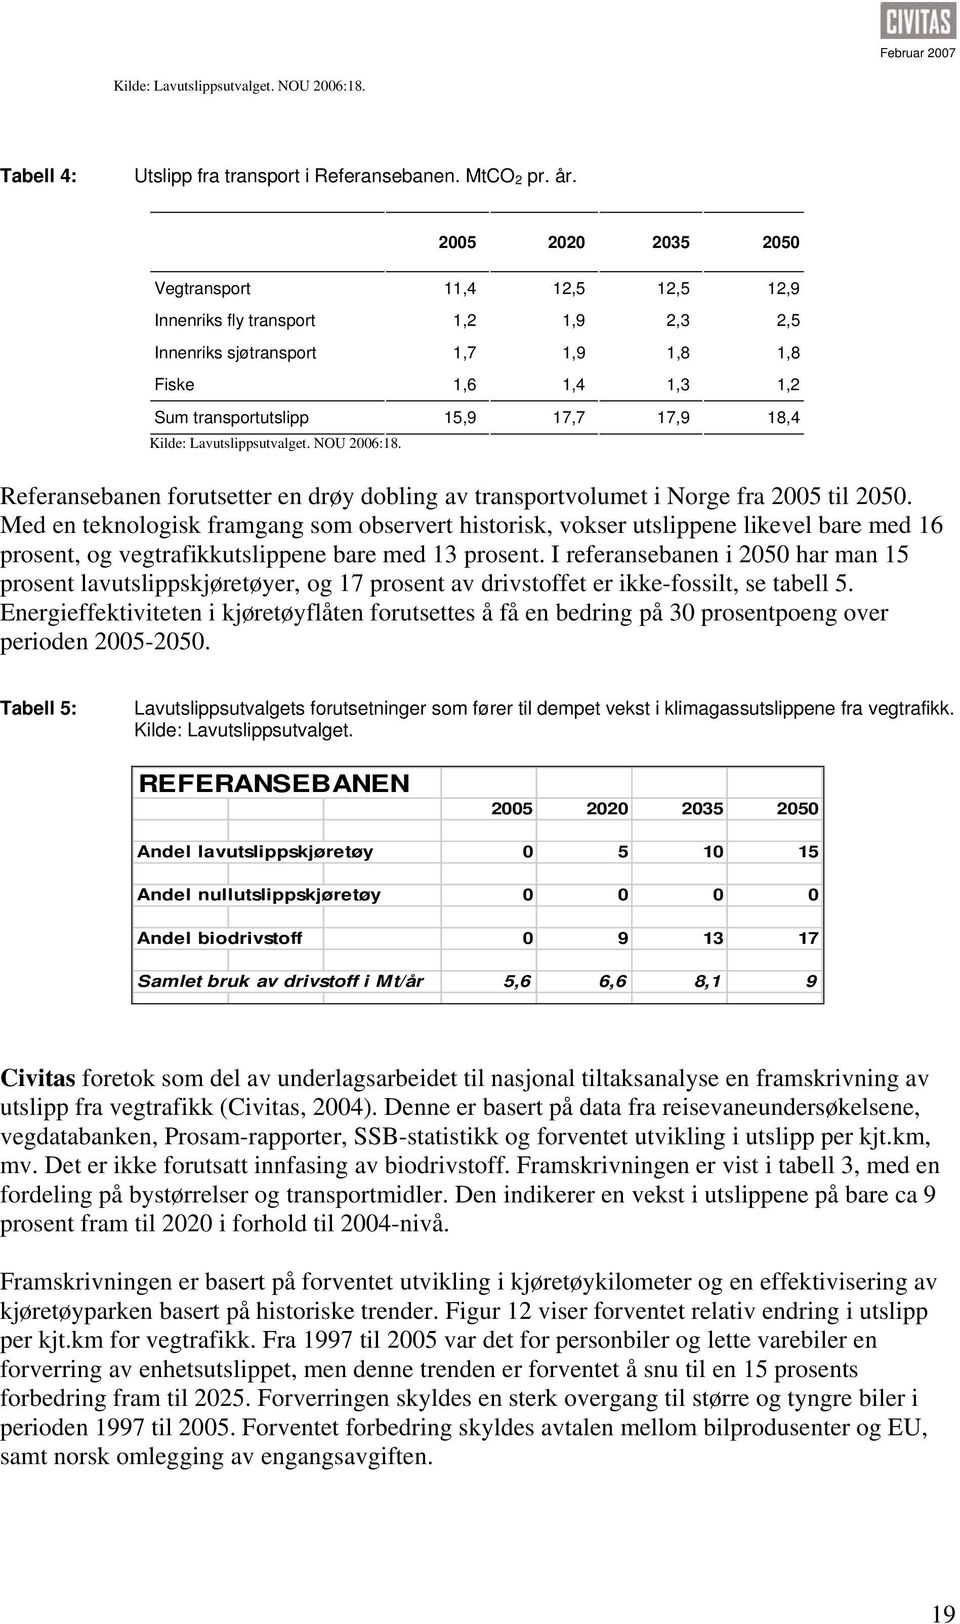 Kilde: Lavutslippsutvalget. NOU 2006:18. Referansebanen forutsetter en drøy dobling av transportvolumet i Norge fra 2005 til 2050.